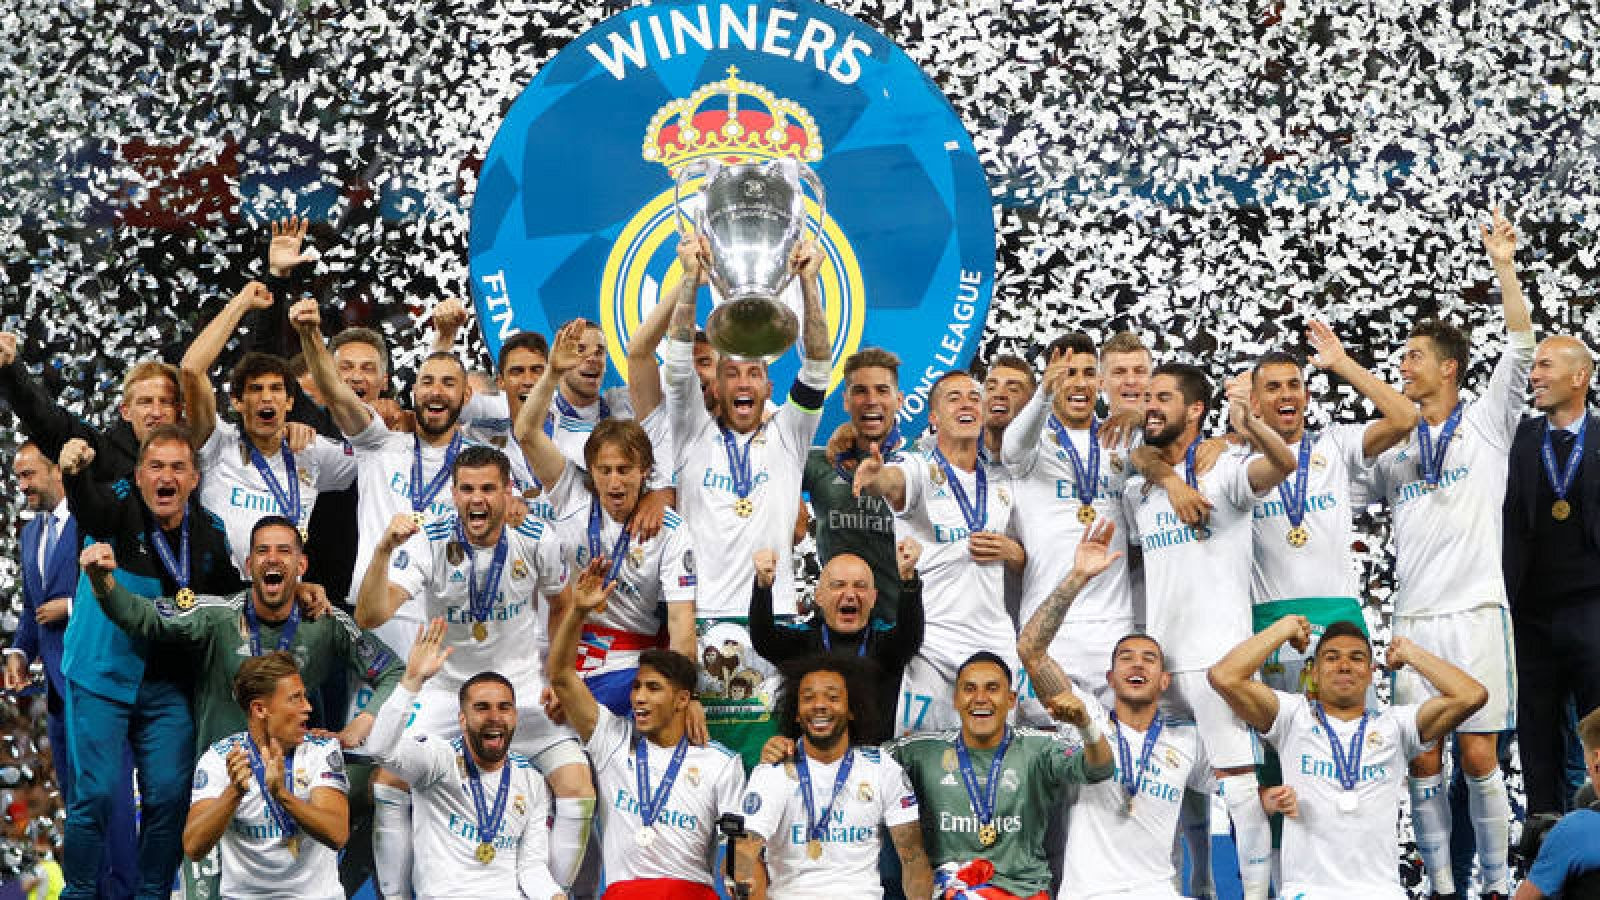 El tercer título consecutivo del Real Madrid de Zidane le encumbra como uno de los mejores equipos de la historia. Gol de Bale para la eternidad.